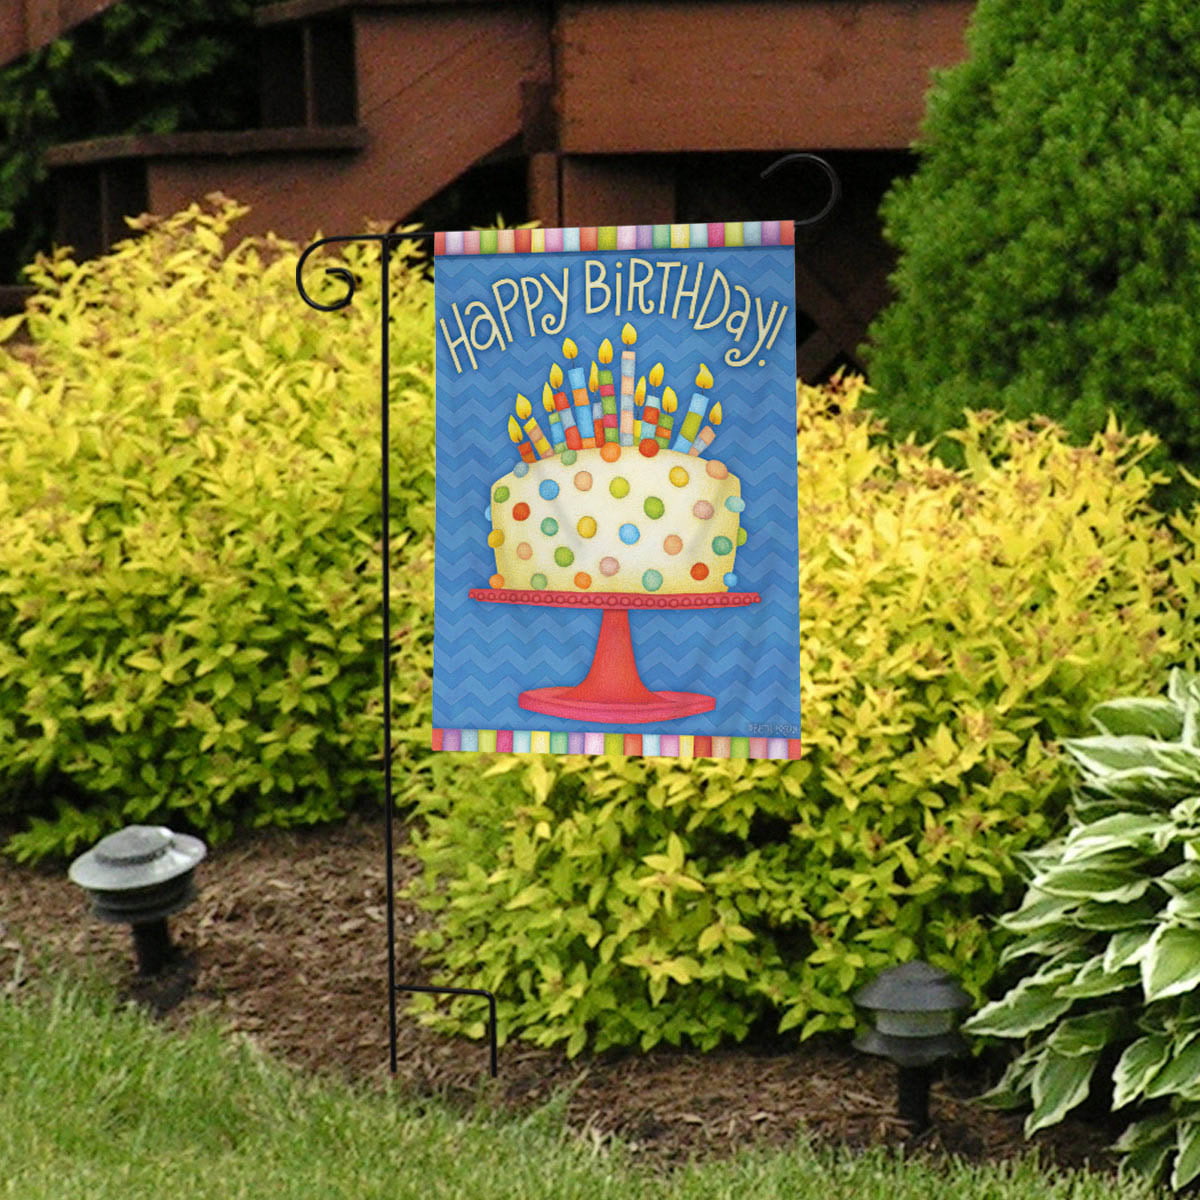 Birthday Cake Celebration Garden Flag Happy Birthday 12.5" x 18" Briarwood Lane 